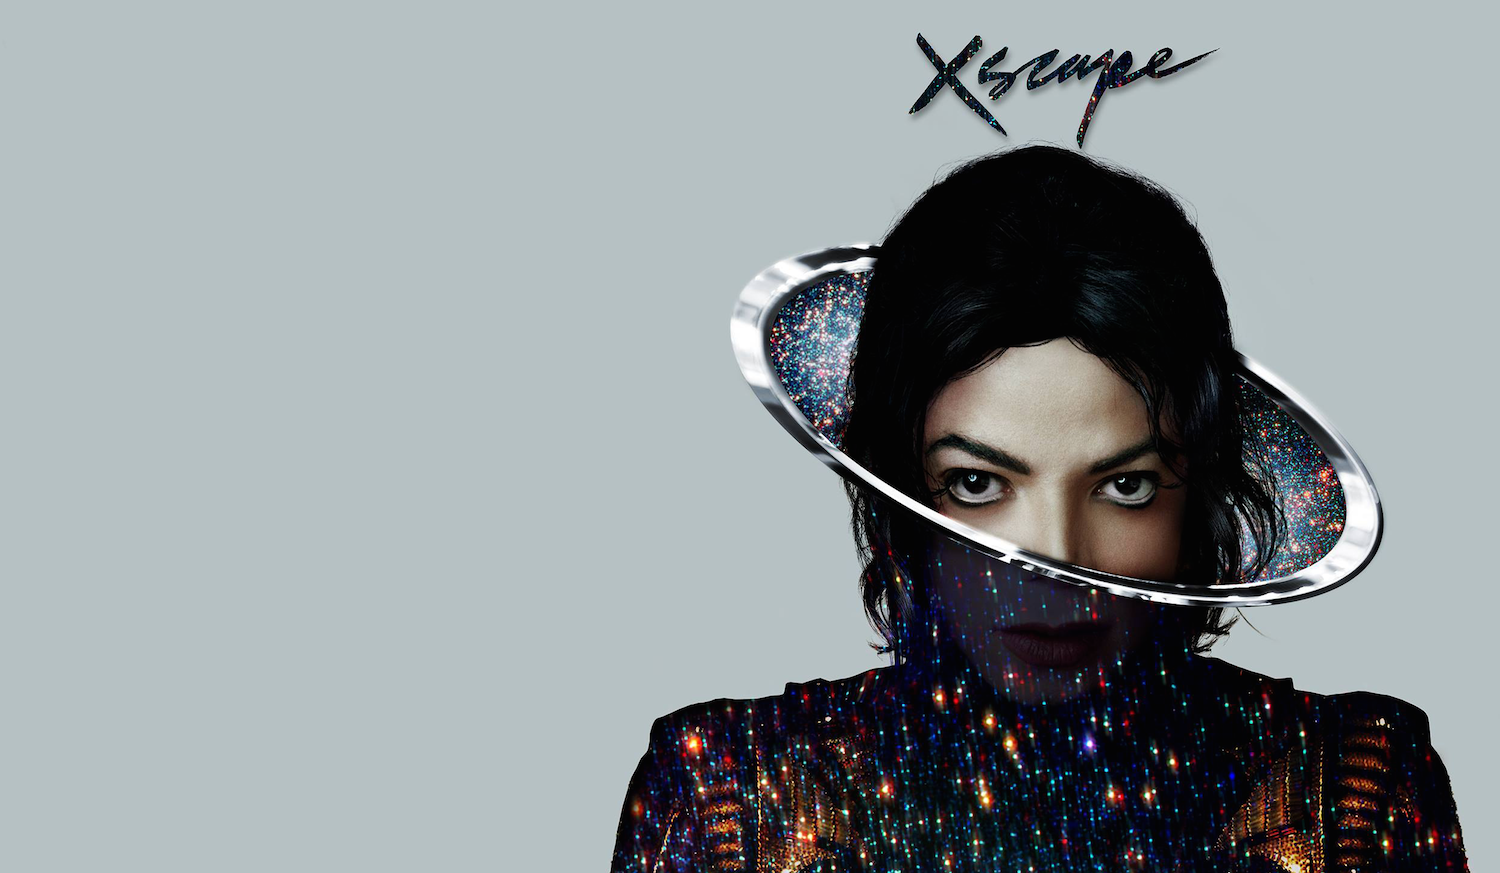 Песни майкла джексона mp3. Michael Jackson Xscape album. Альбом Xscape Michael Jackson.